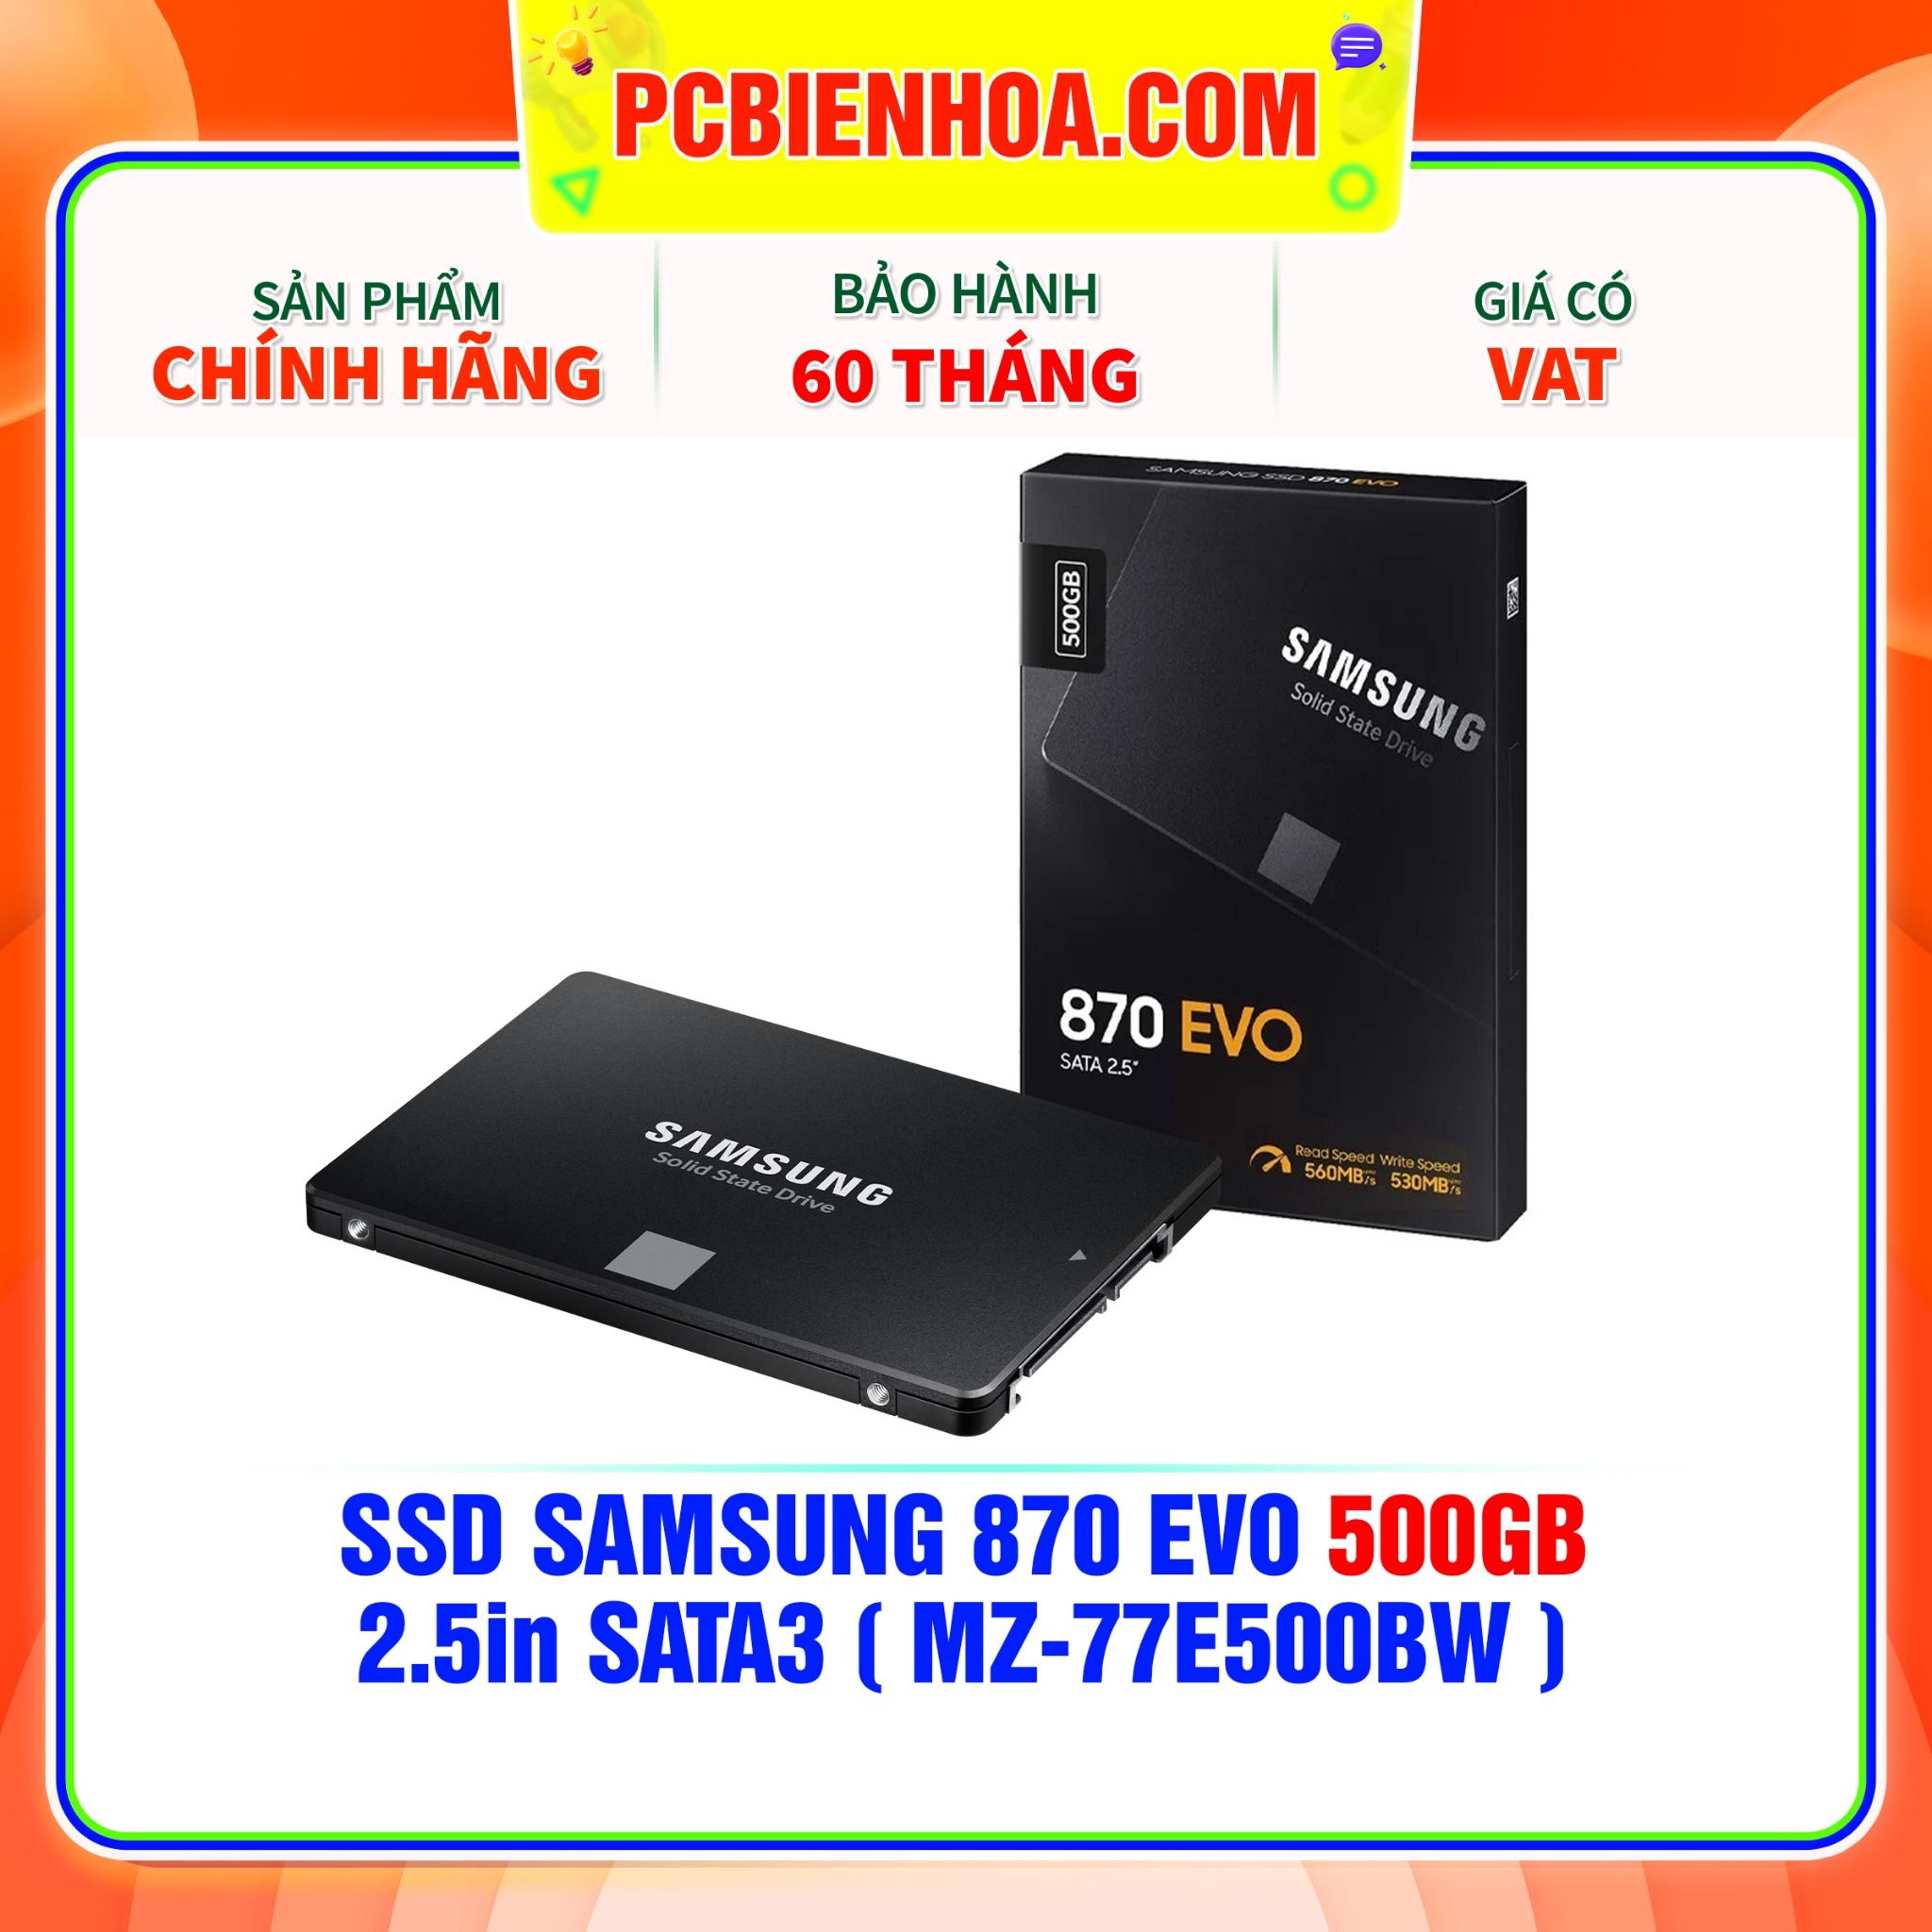  SSD SAMSUNG 870 EVO 500GB - 2.5in SATA3 ( MZ-77E500BW ) 